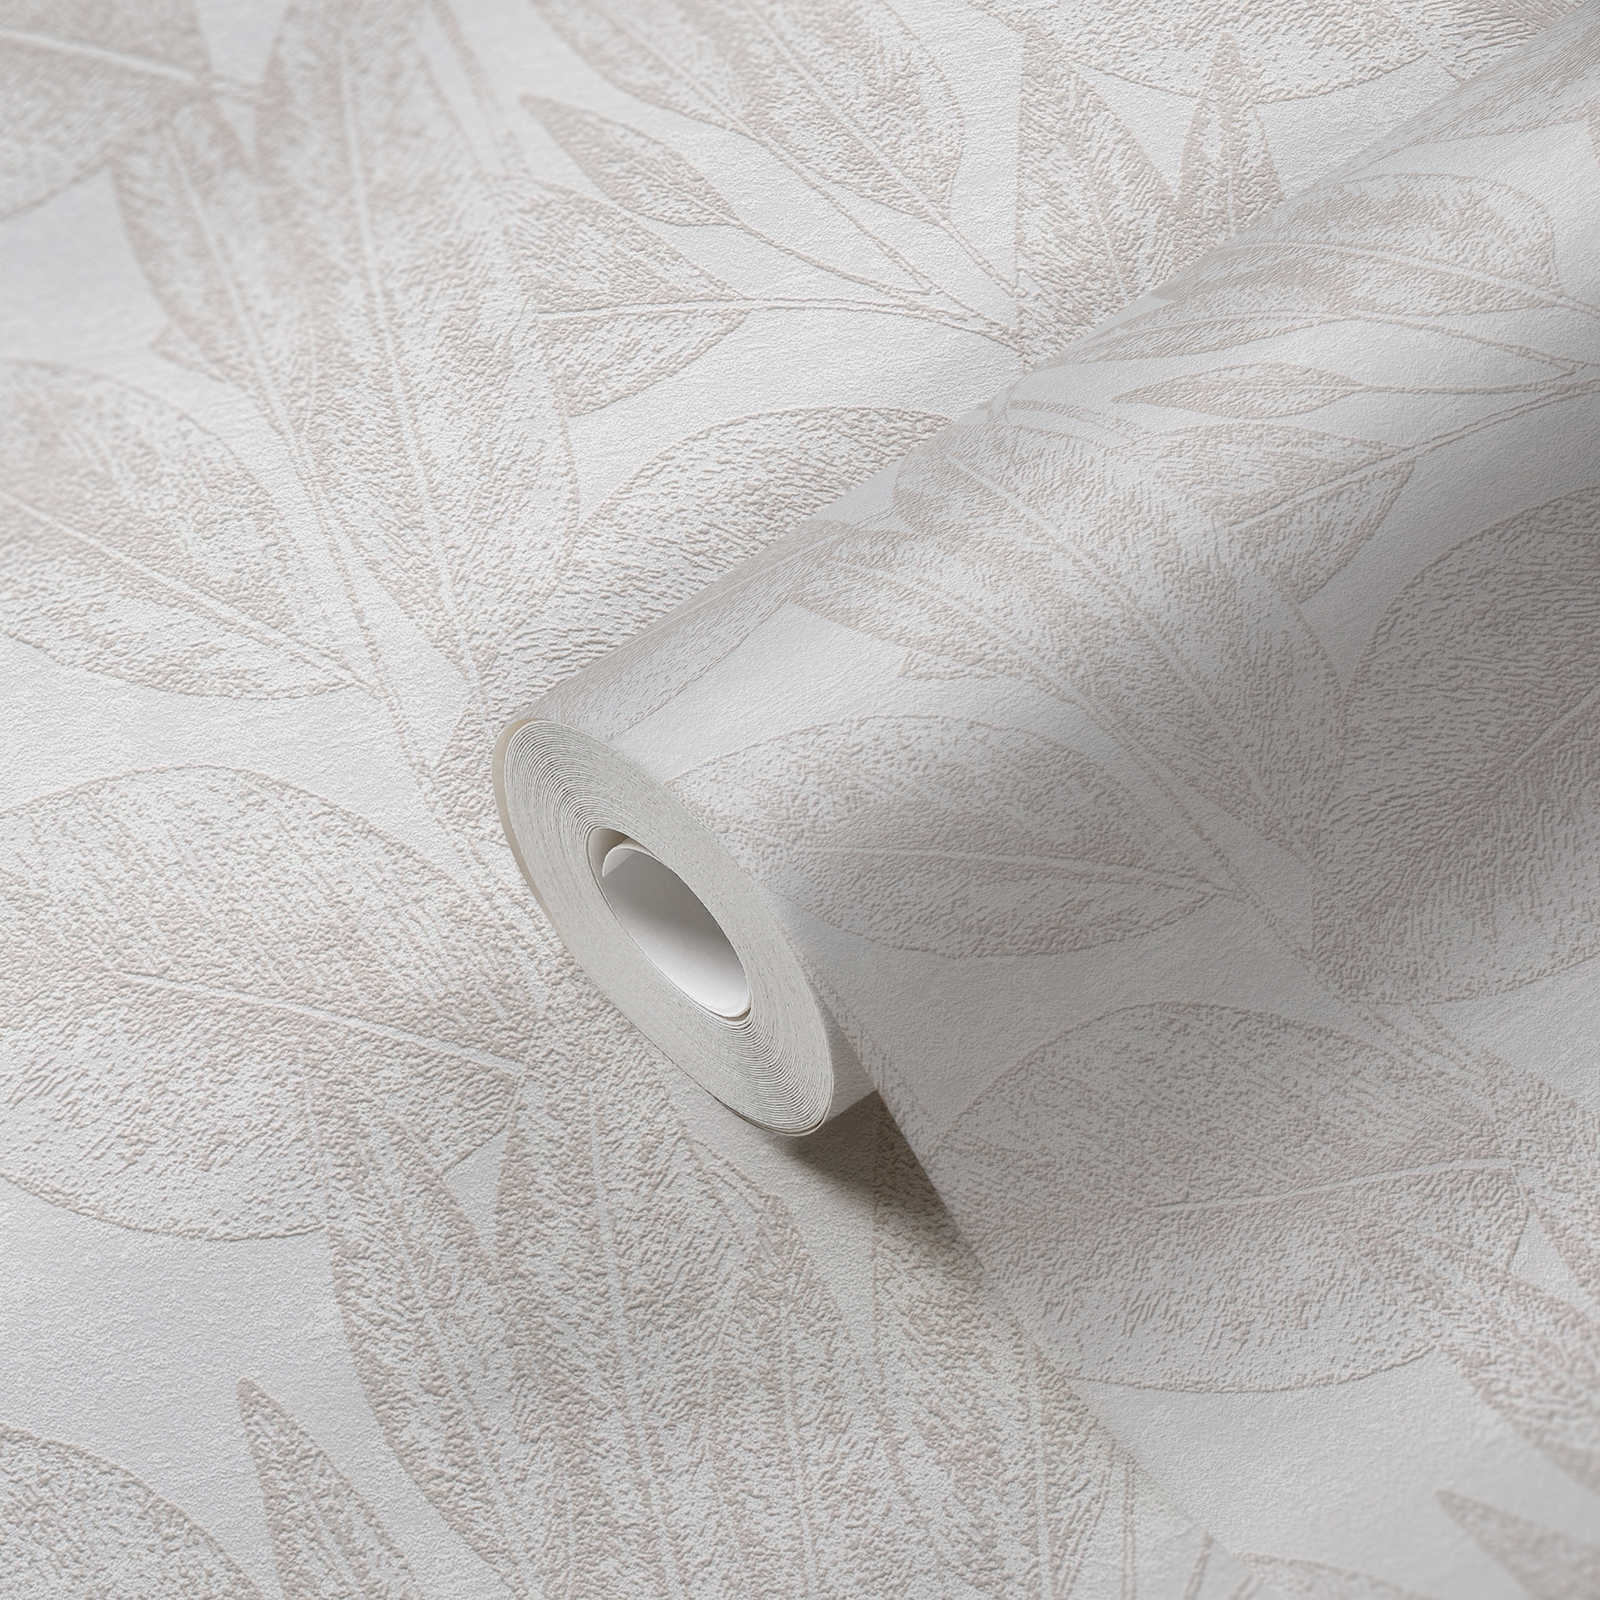             Vintage look leaf pattern wallpaper - beige
        